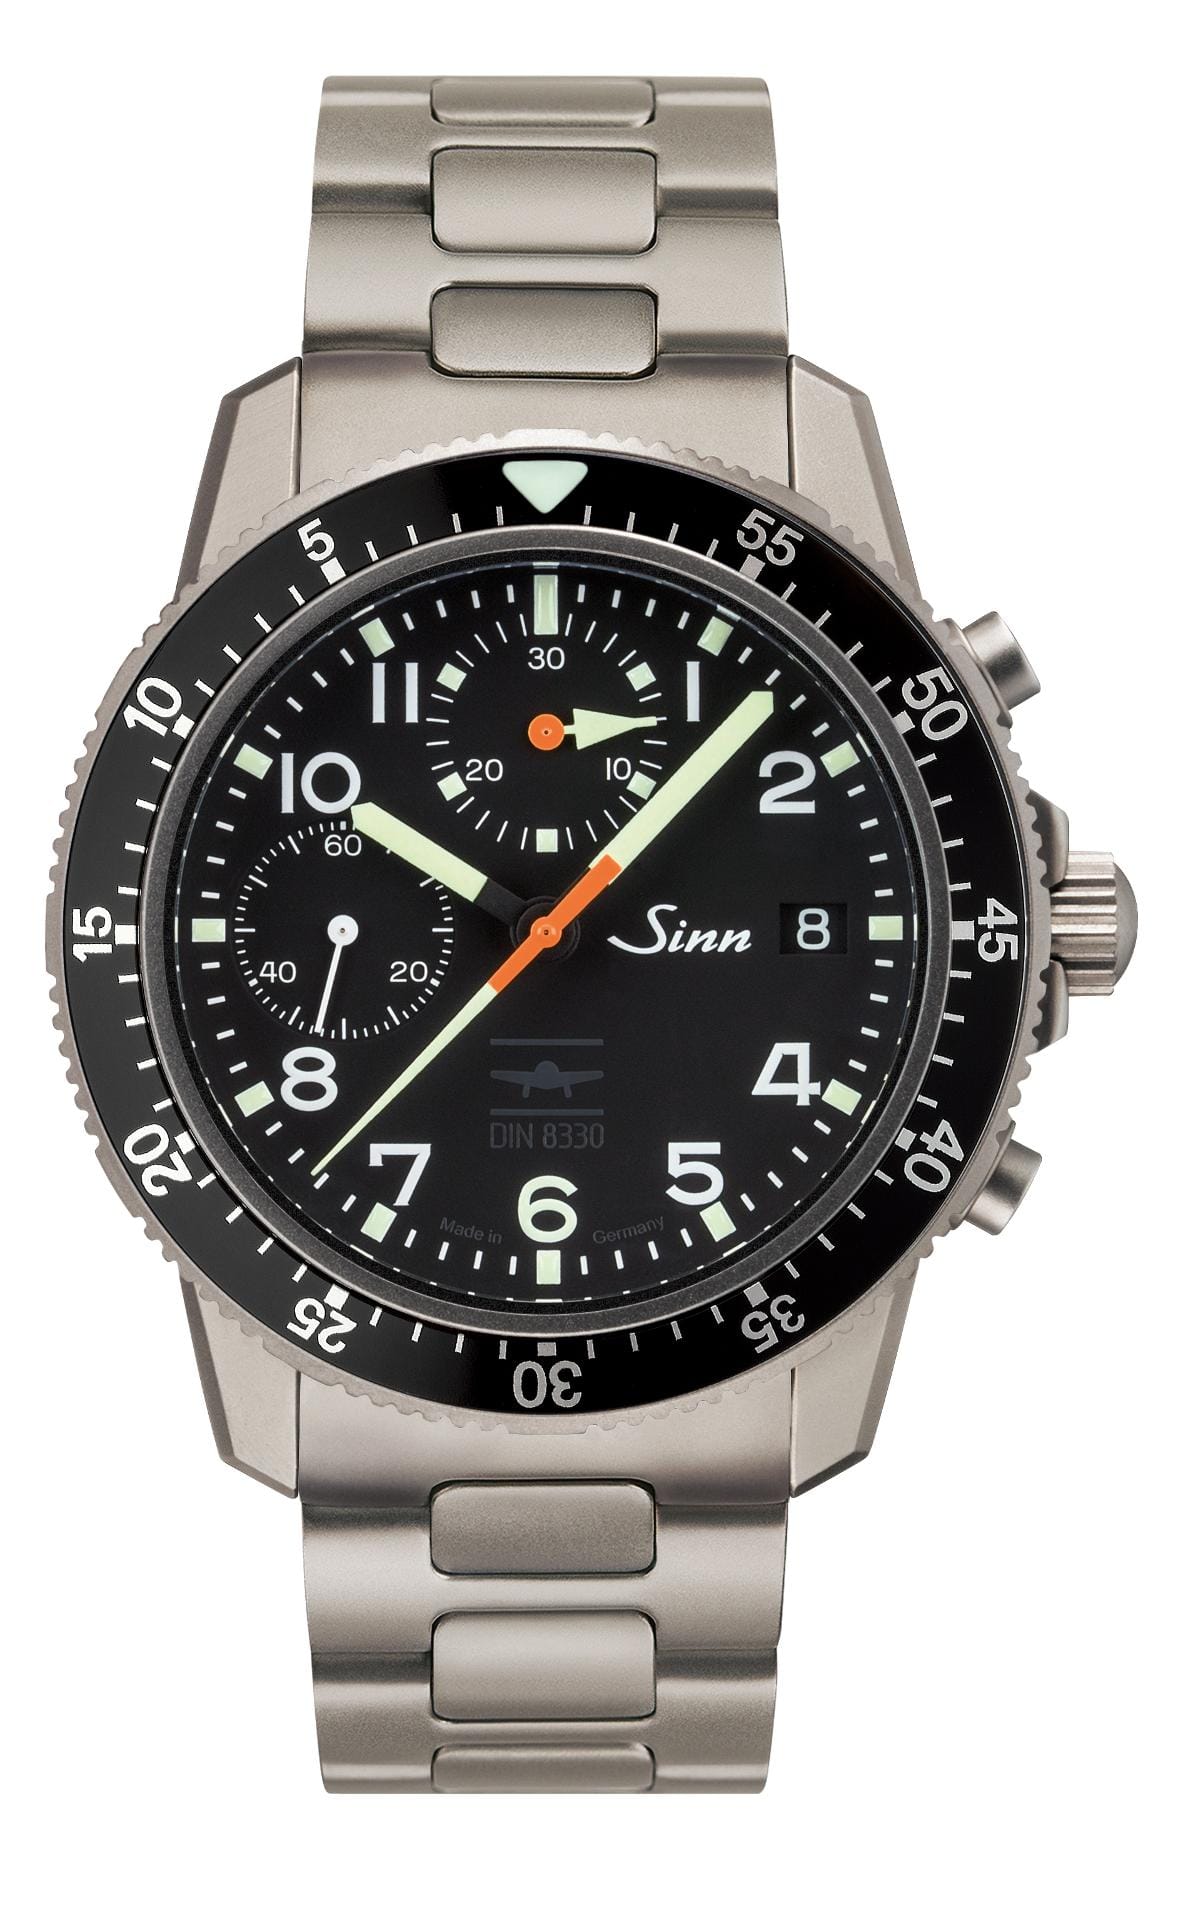 Von Uhrenbauer Sinn wurden drei neue Uhren gemäß der neuen DIN-Norm 8330 für Fliegeruhren zertifiziert. Für die 103 Ti IFR berechnet der Hersteller 2380 Euro (Version mit Lederarmband),